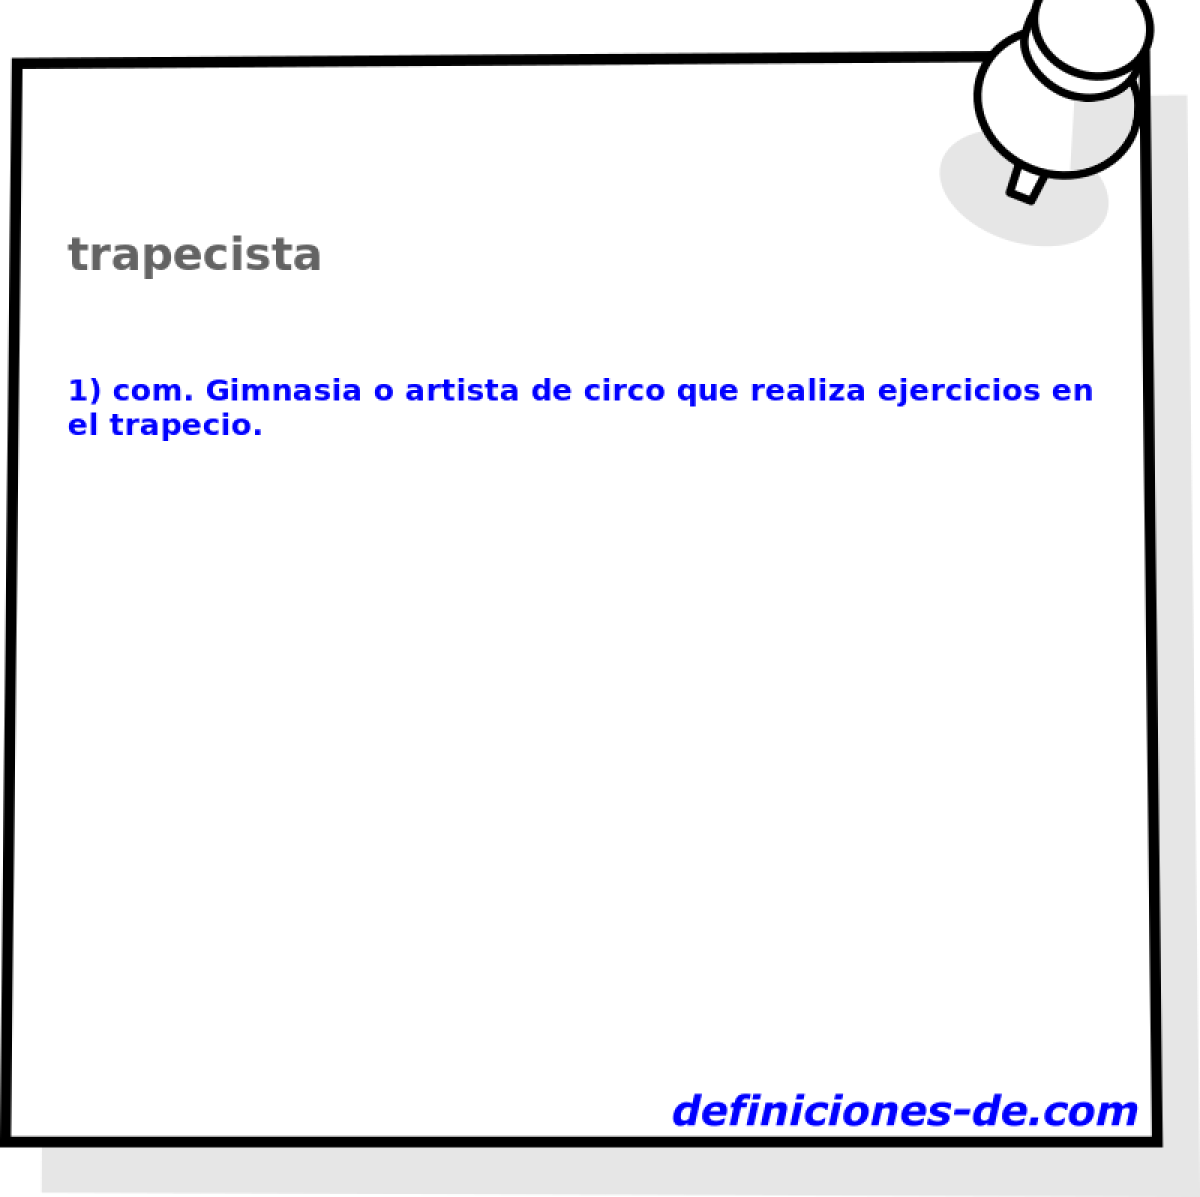 trapecista 